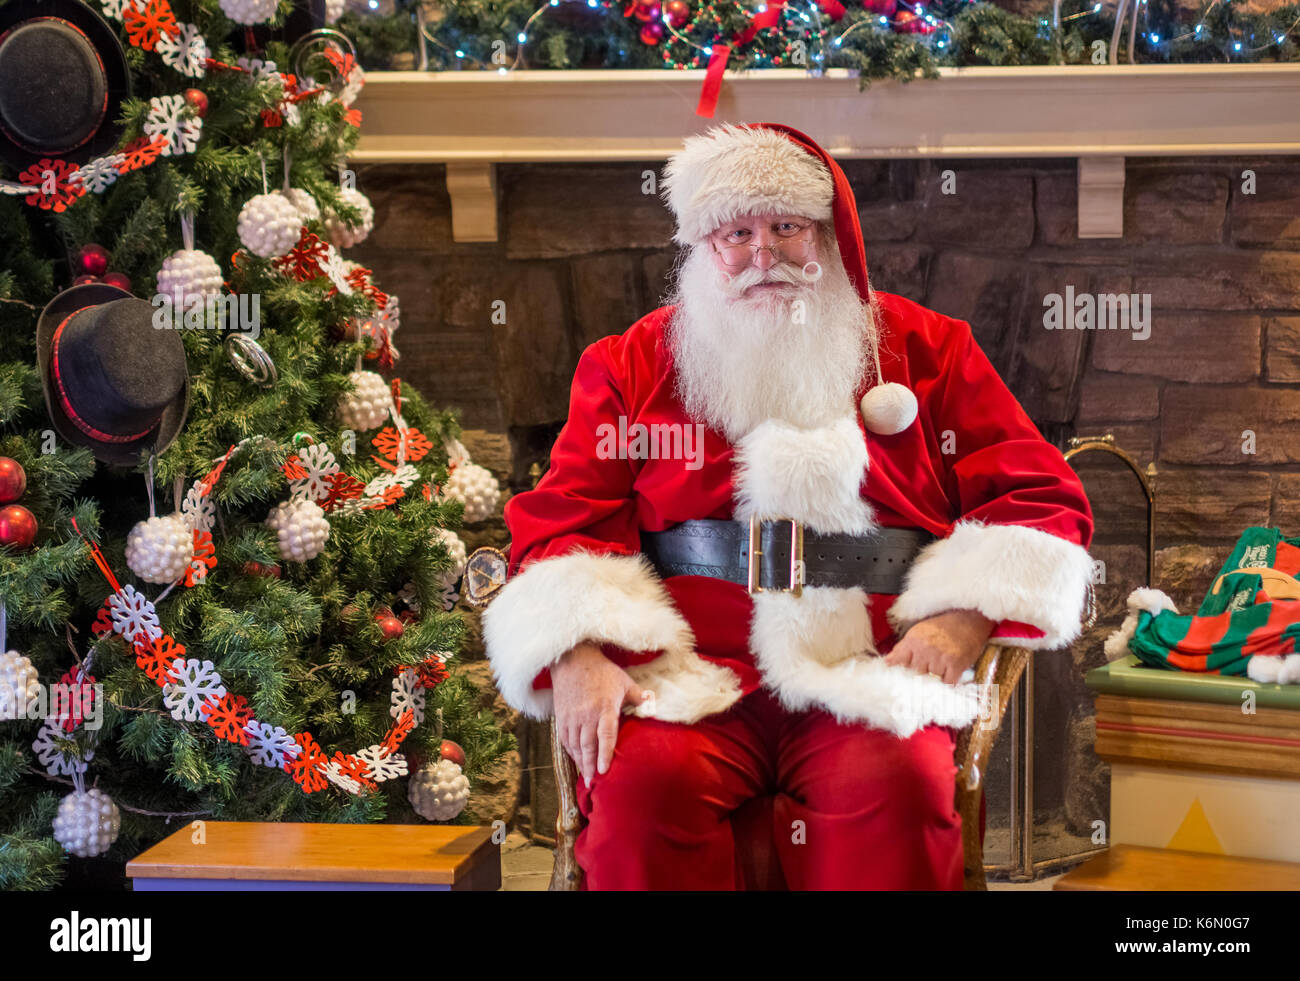 Sant warten auf Kinder zu erhalten, die ihren Urlaub in ein Hallenbad Einstellung geklickt haben. Der Hintergrund zeigt einen geschmückten Weihnachtsbaum mit Ornamenten. Stockfoto